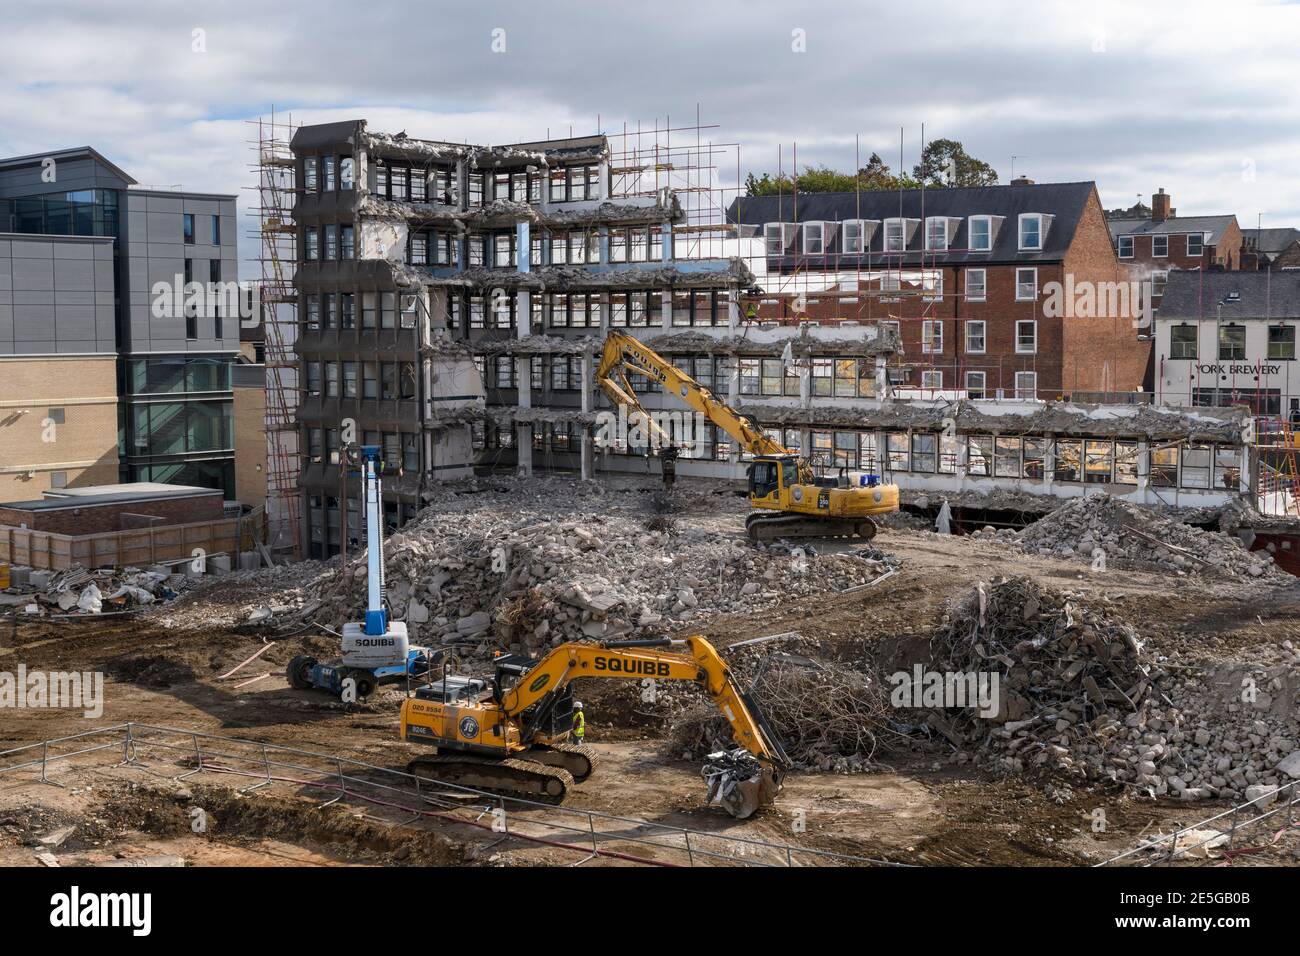 Vista dall'alto del sito di demolizione (macerie, macchinari pesanti, escavatori che lavorano e demoliscono il guscio vuoto dell'edificio per uffici) - Hudson House, York, Inghilterra, Regno Unito. Foto Stock